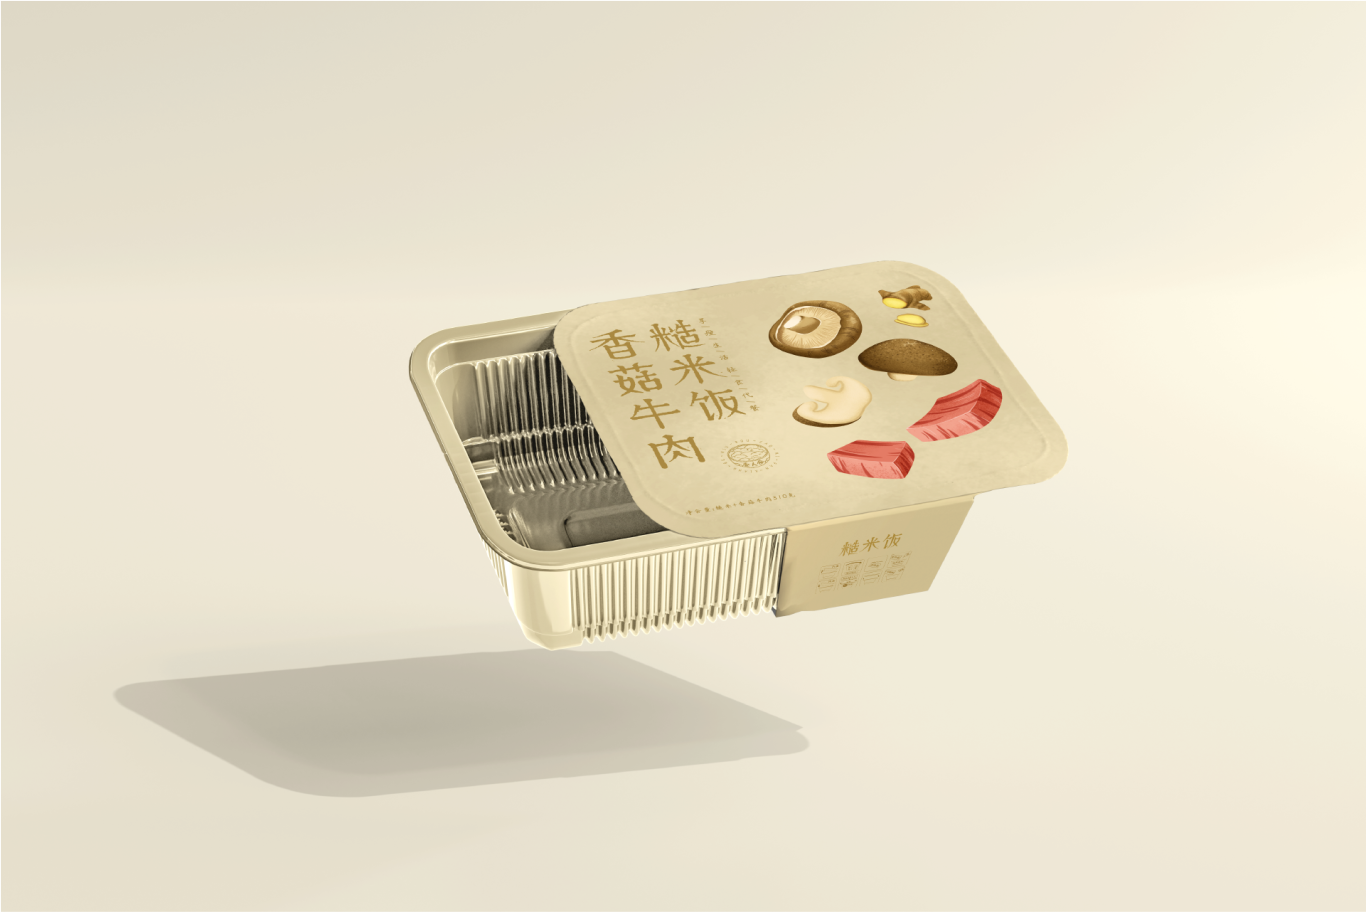 自热米饭包装设计图11